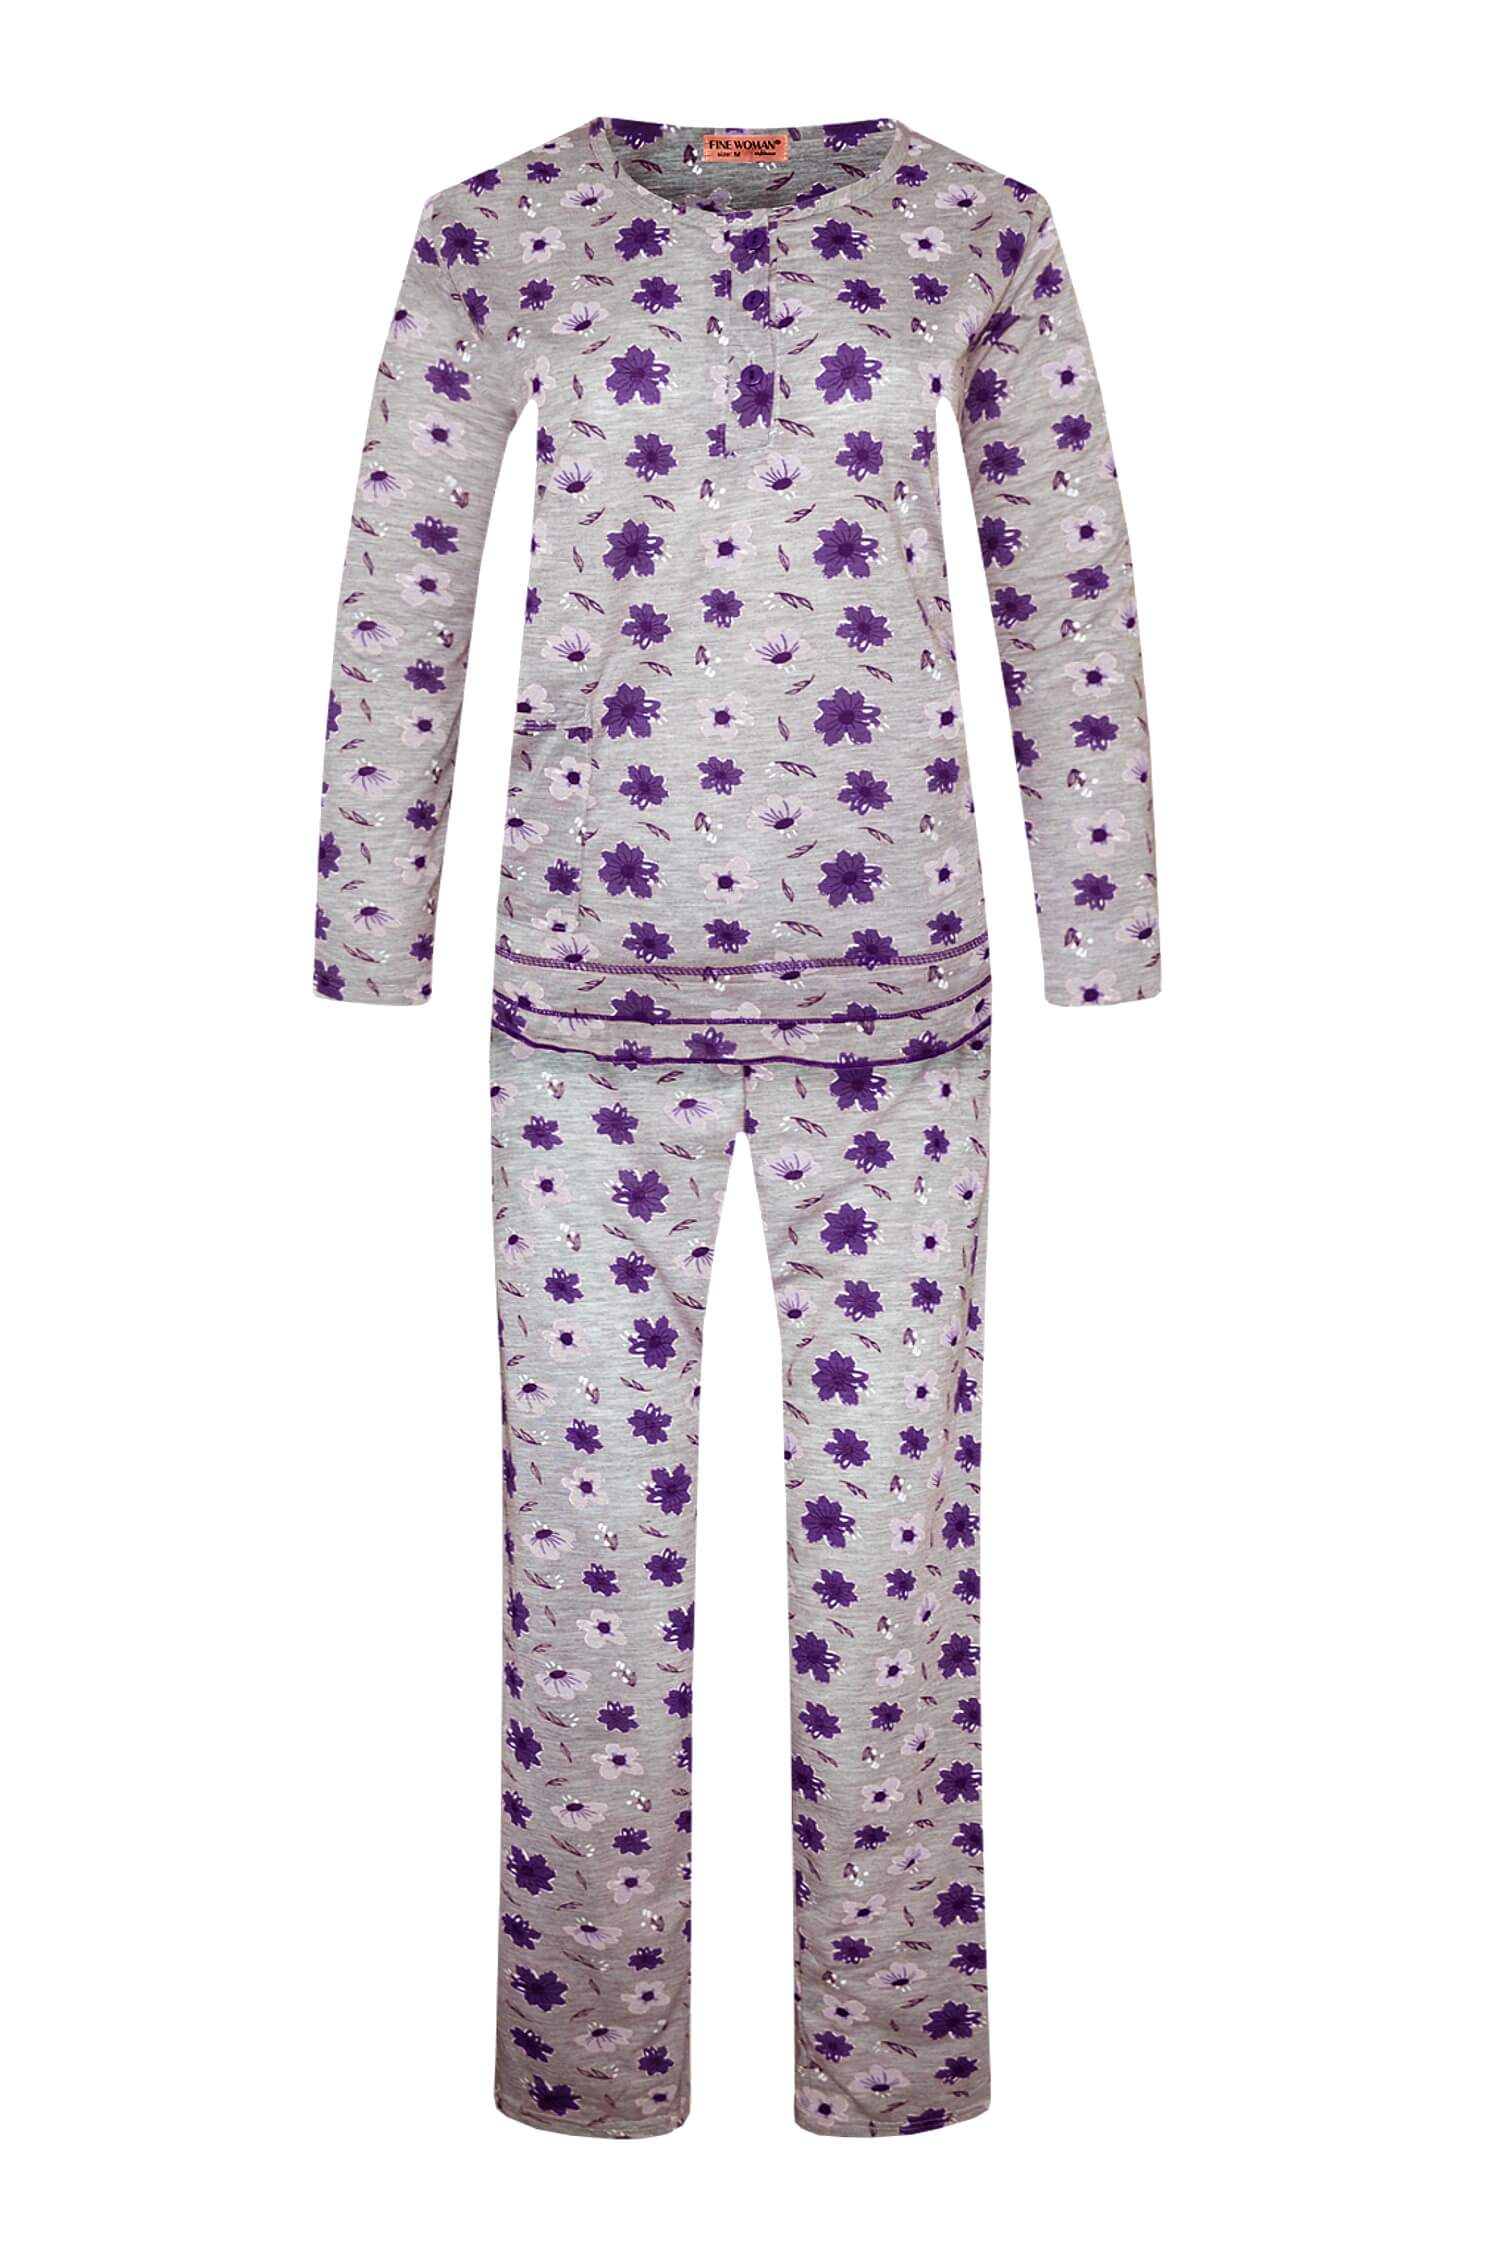 Arenda dámské dlouhé pyžamo 2297 3XL fialová